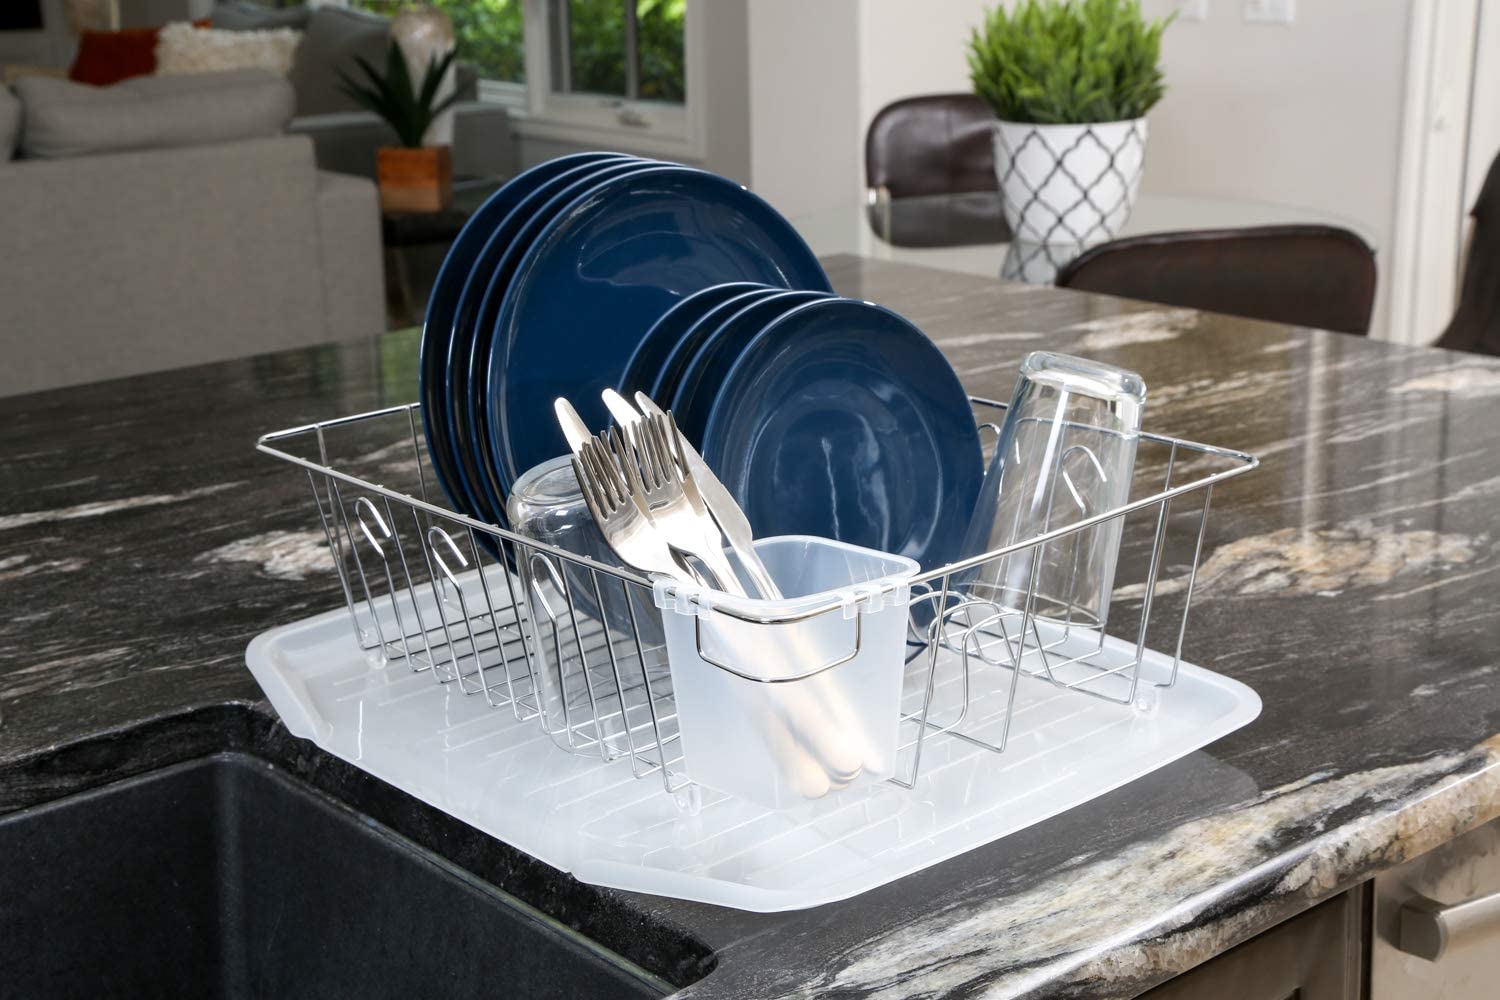 https://www.shopsmartdesign.com/cdn/shop/products/drain-board-with-sloped-funnel-shape-smart-design-kitchen-8114114-incrementing-number-763989.jpg?v=1679343104